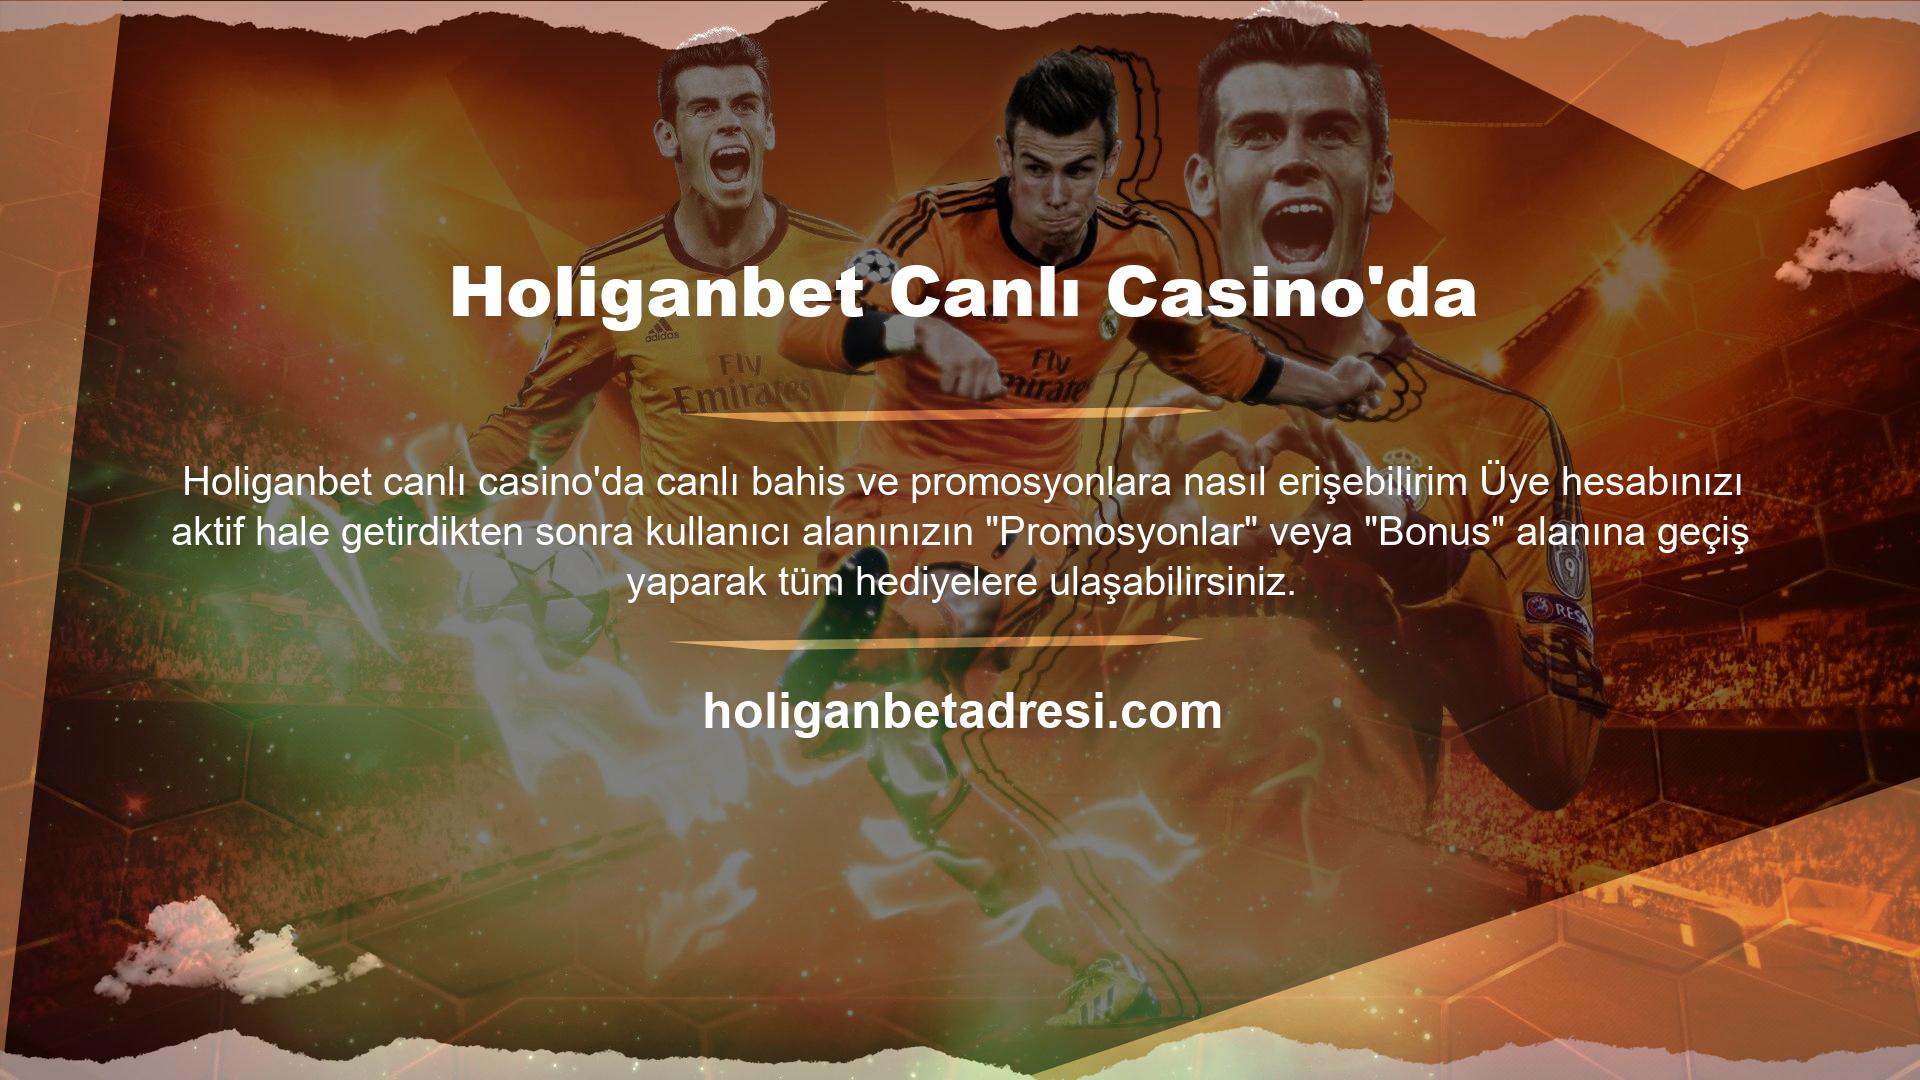 Türkiye'nin en popüler online kumar platformlarından biri olan Holiganbet, giriş adresini sık sık değiştirmektedir